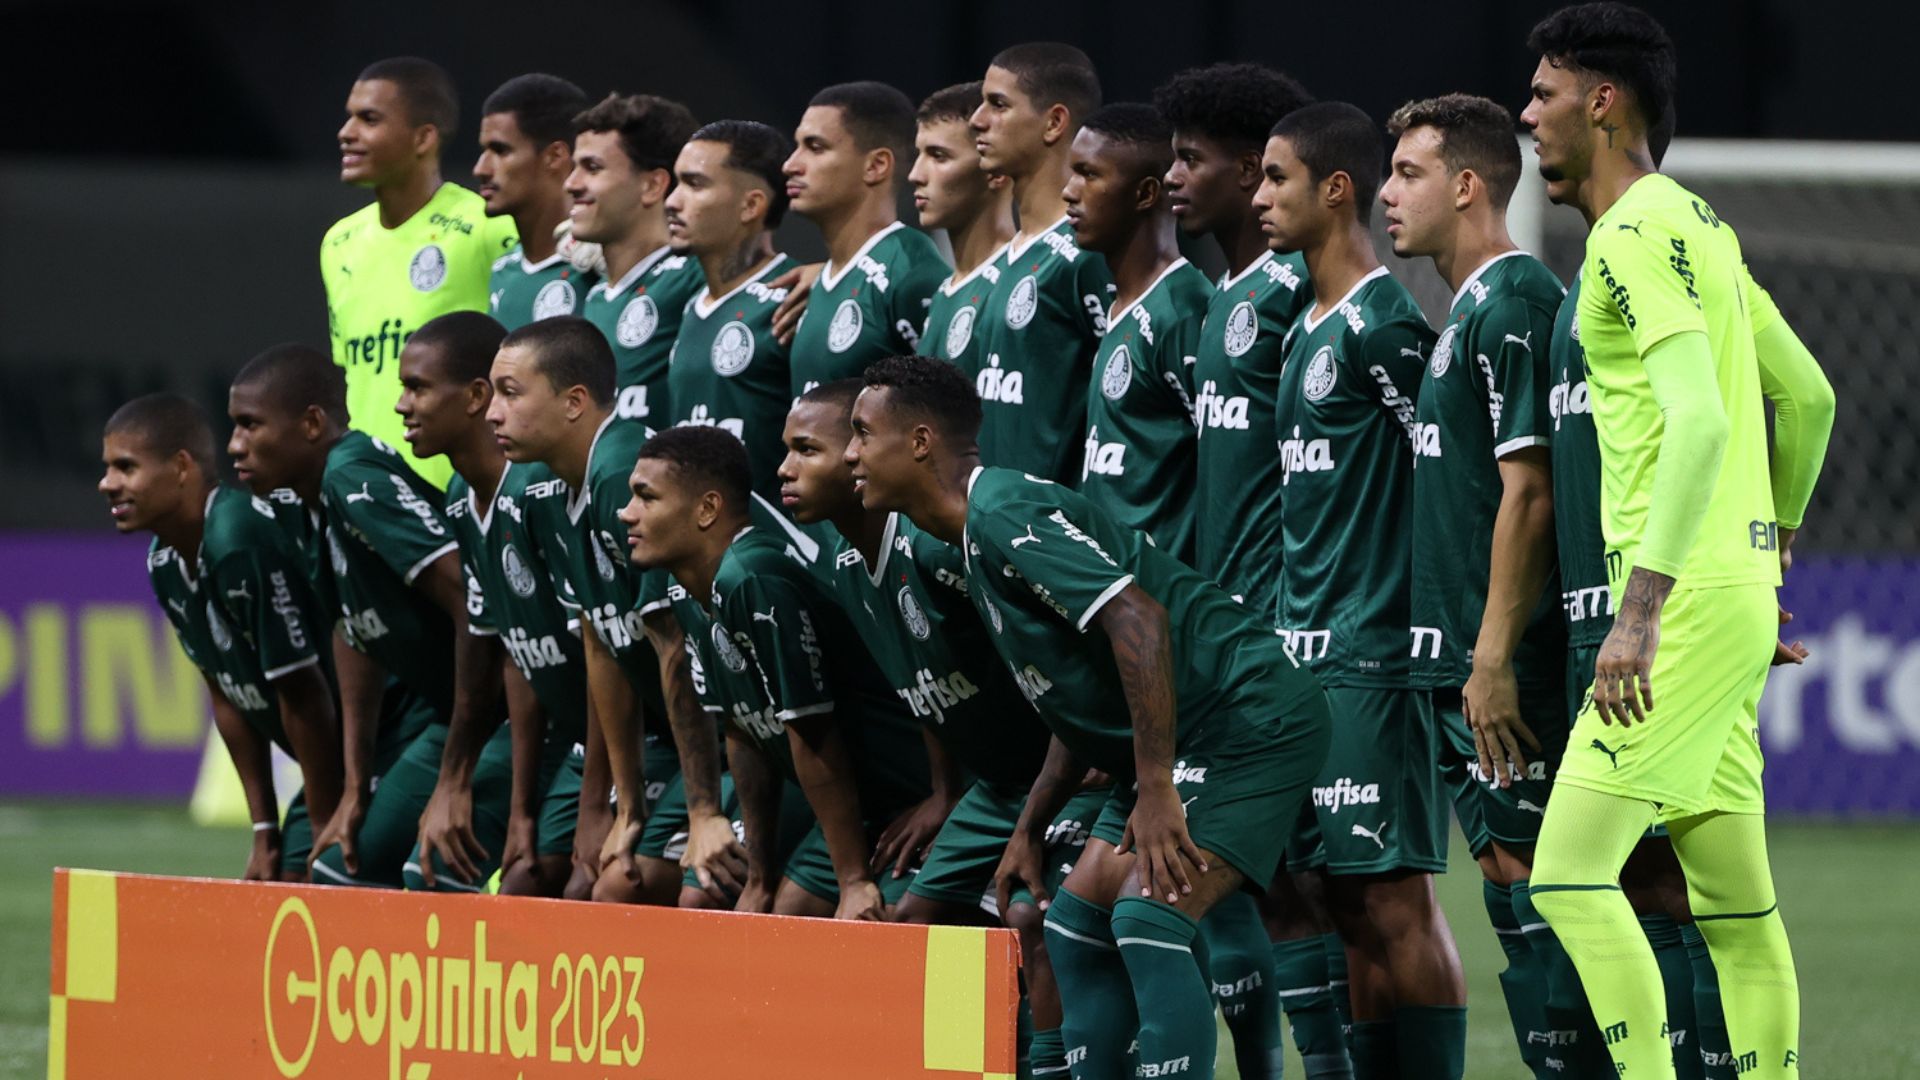 Elenco do Palmeiras na Copinha 2023